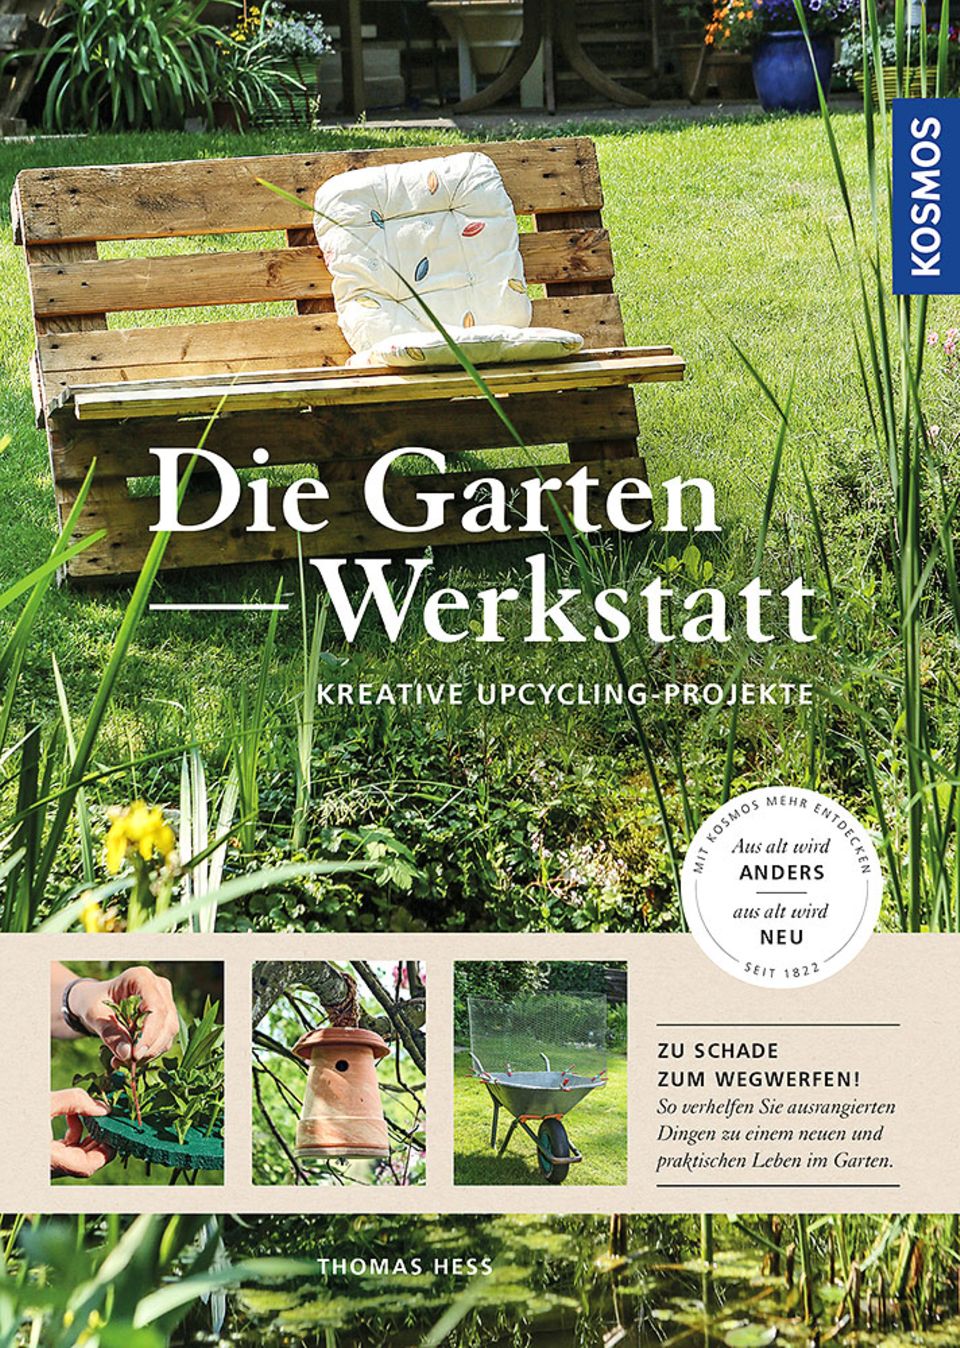 Cover vom Buch "Die Gartenwerkstatt – kreative Upcycling-Projekte" von Autor Thomas Heß